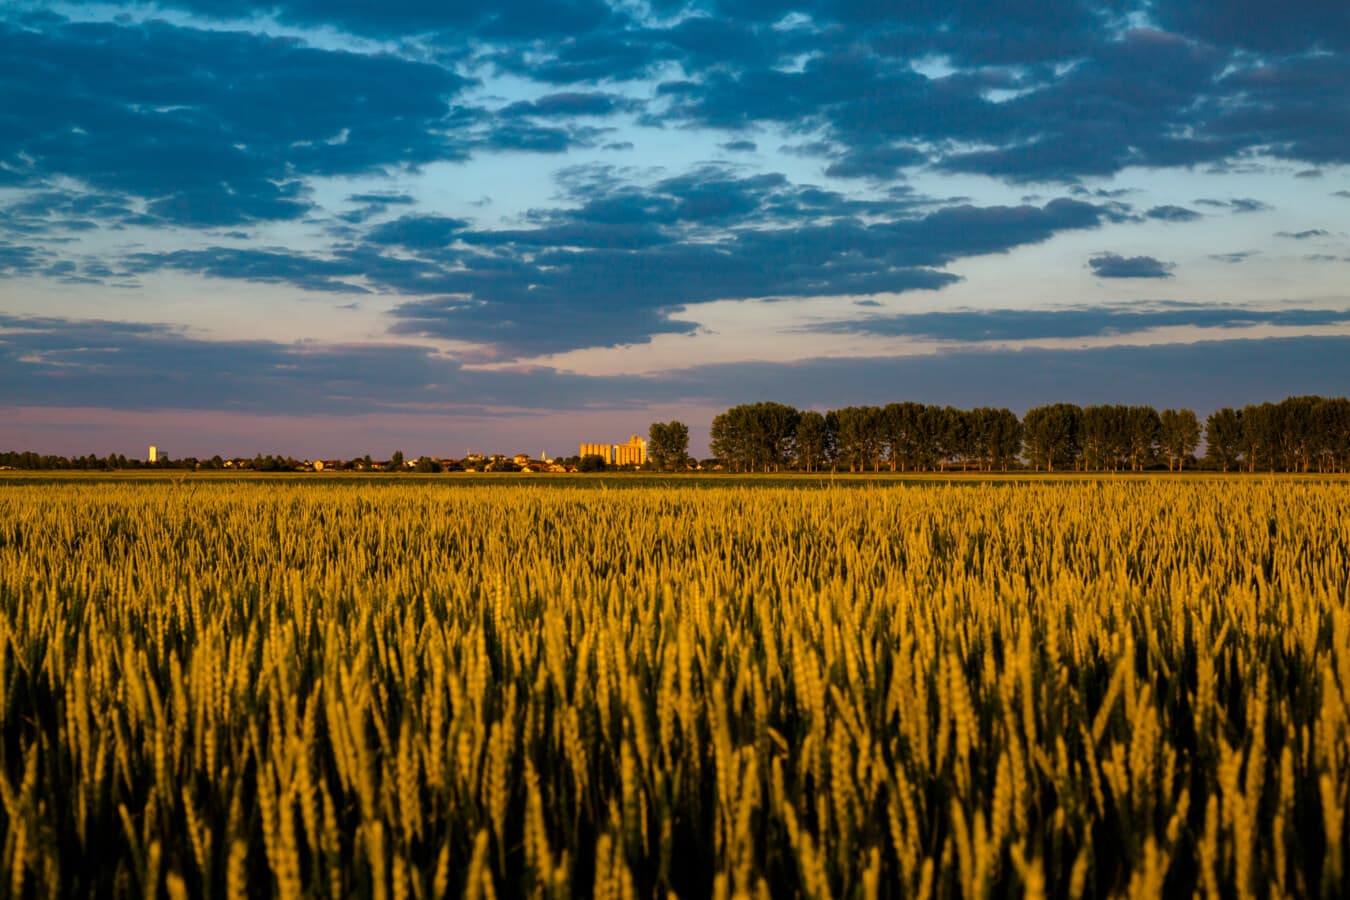 lúa mì, Wheatfield, nông nghiệp, ngũ cốc, thời tiết xấu, bầu trời xanh, kịch tính, vùng nông thôn, lĩnh vực, cảnh quan